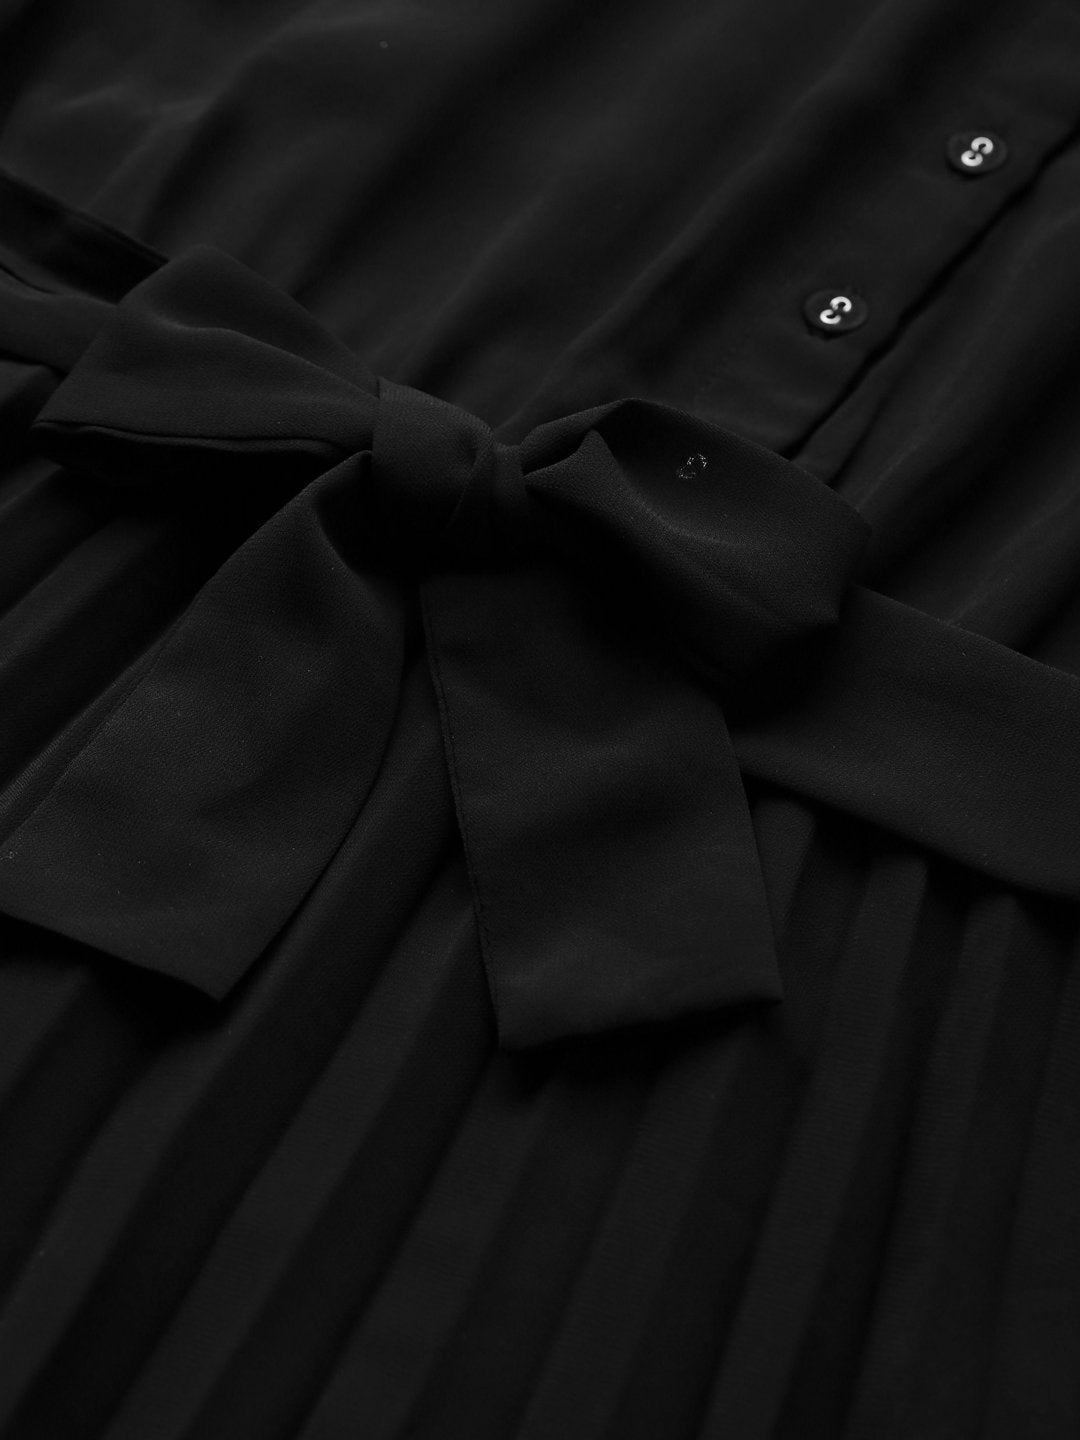 Women's Black Pleated Midi Dress - SASSAFRAS